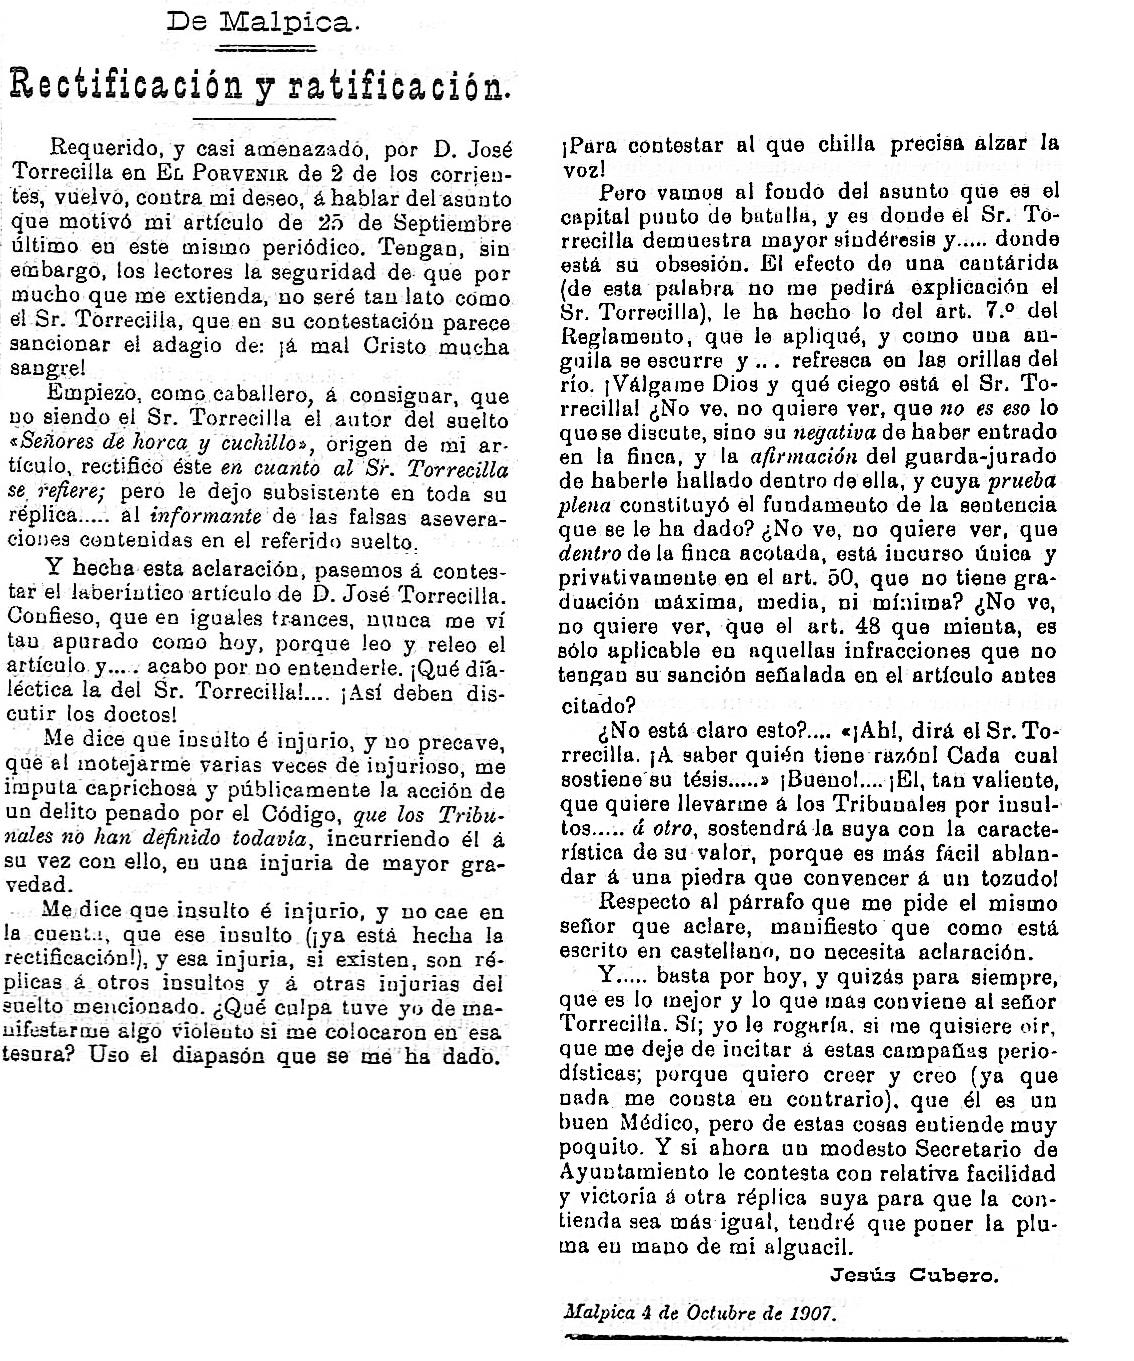 Rectificación y ratificación del secretario de Malpica por la denuncia del médico de Cebolla por cazar en Pusa. El porvenir : periódico carlista: Año III Número 106 - 1907 octubre 9.